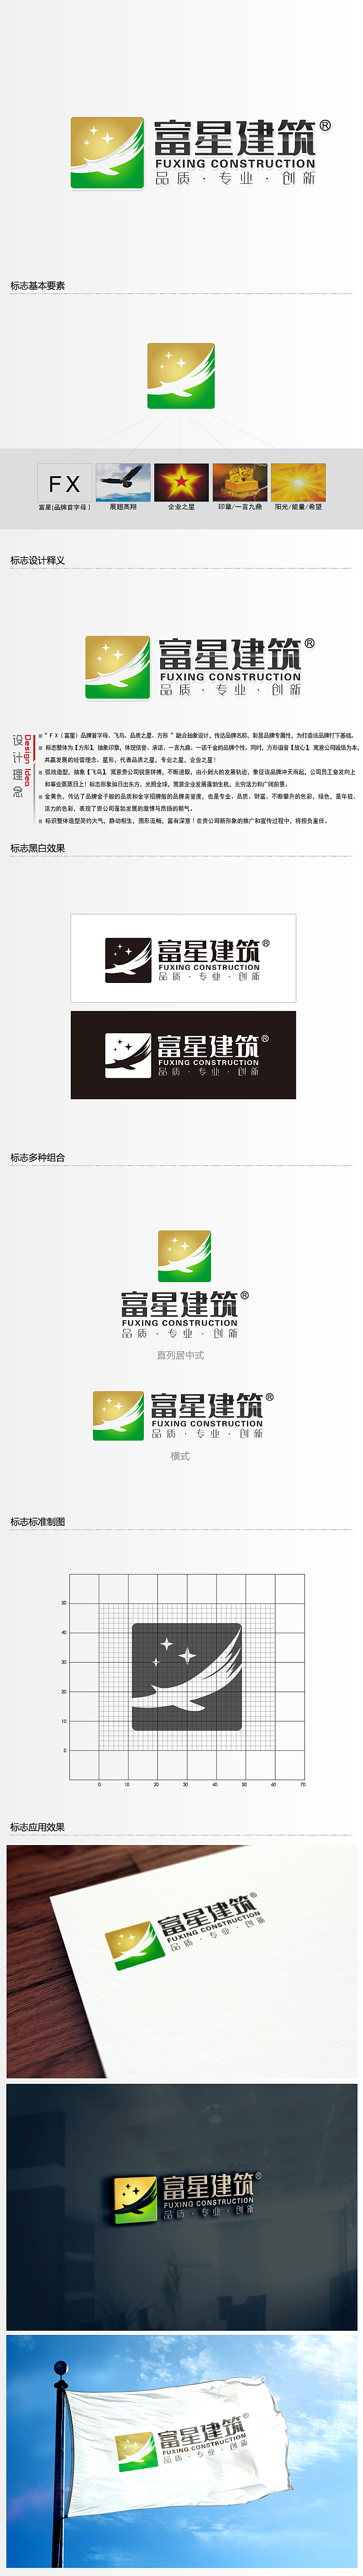 黎明锋的天津富星建筑工程有限公司logo设计